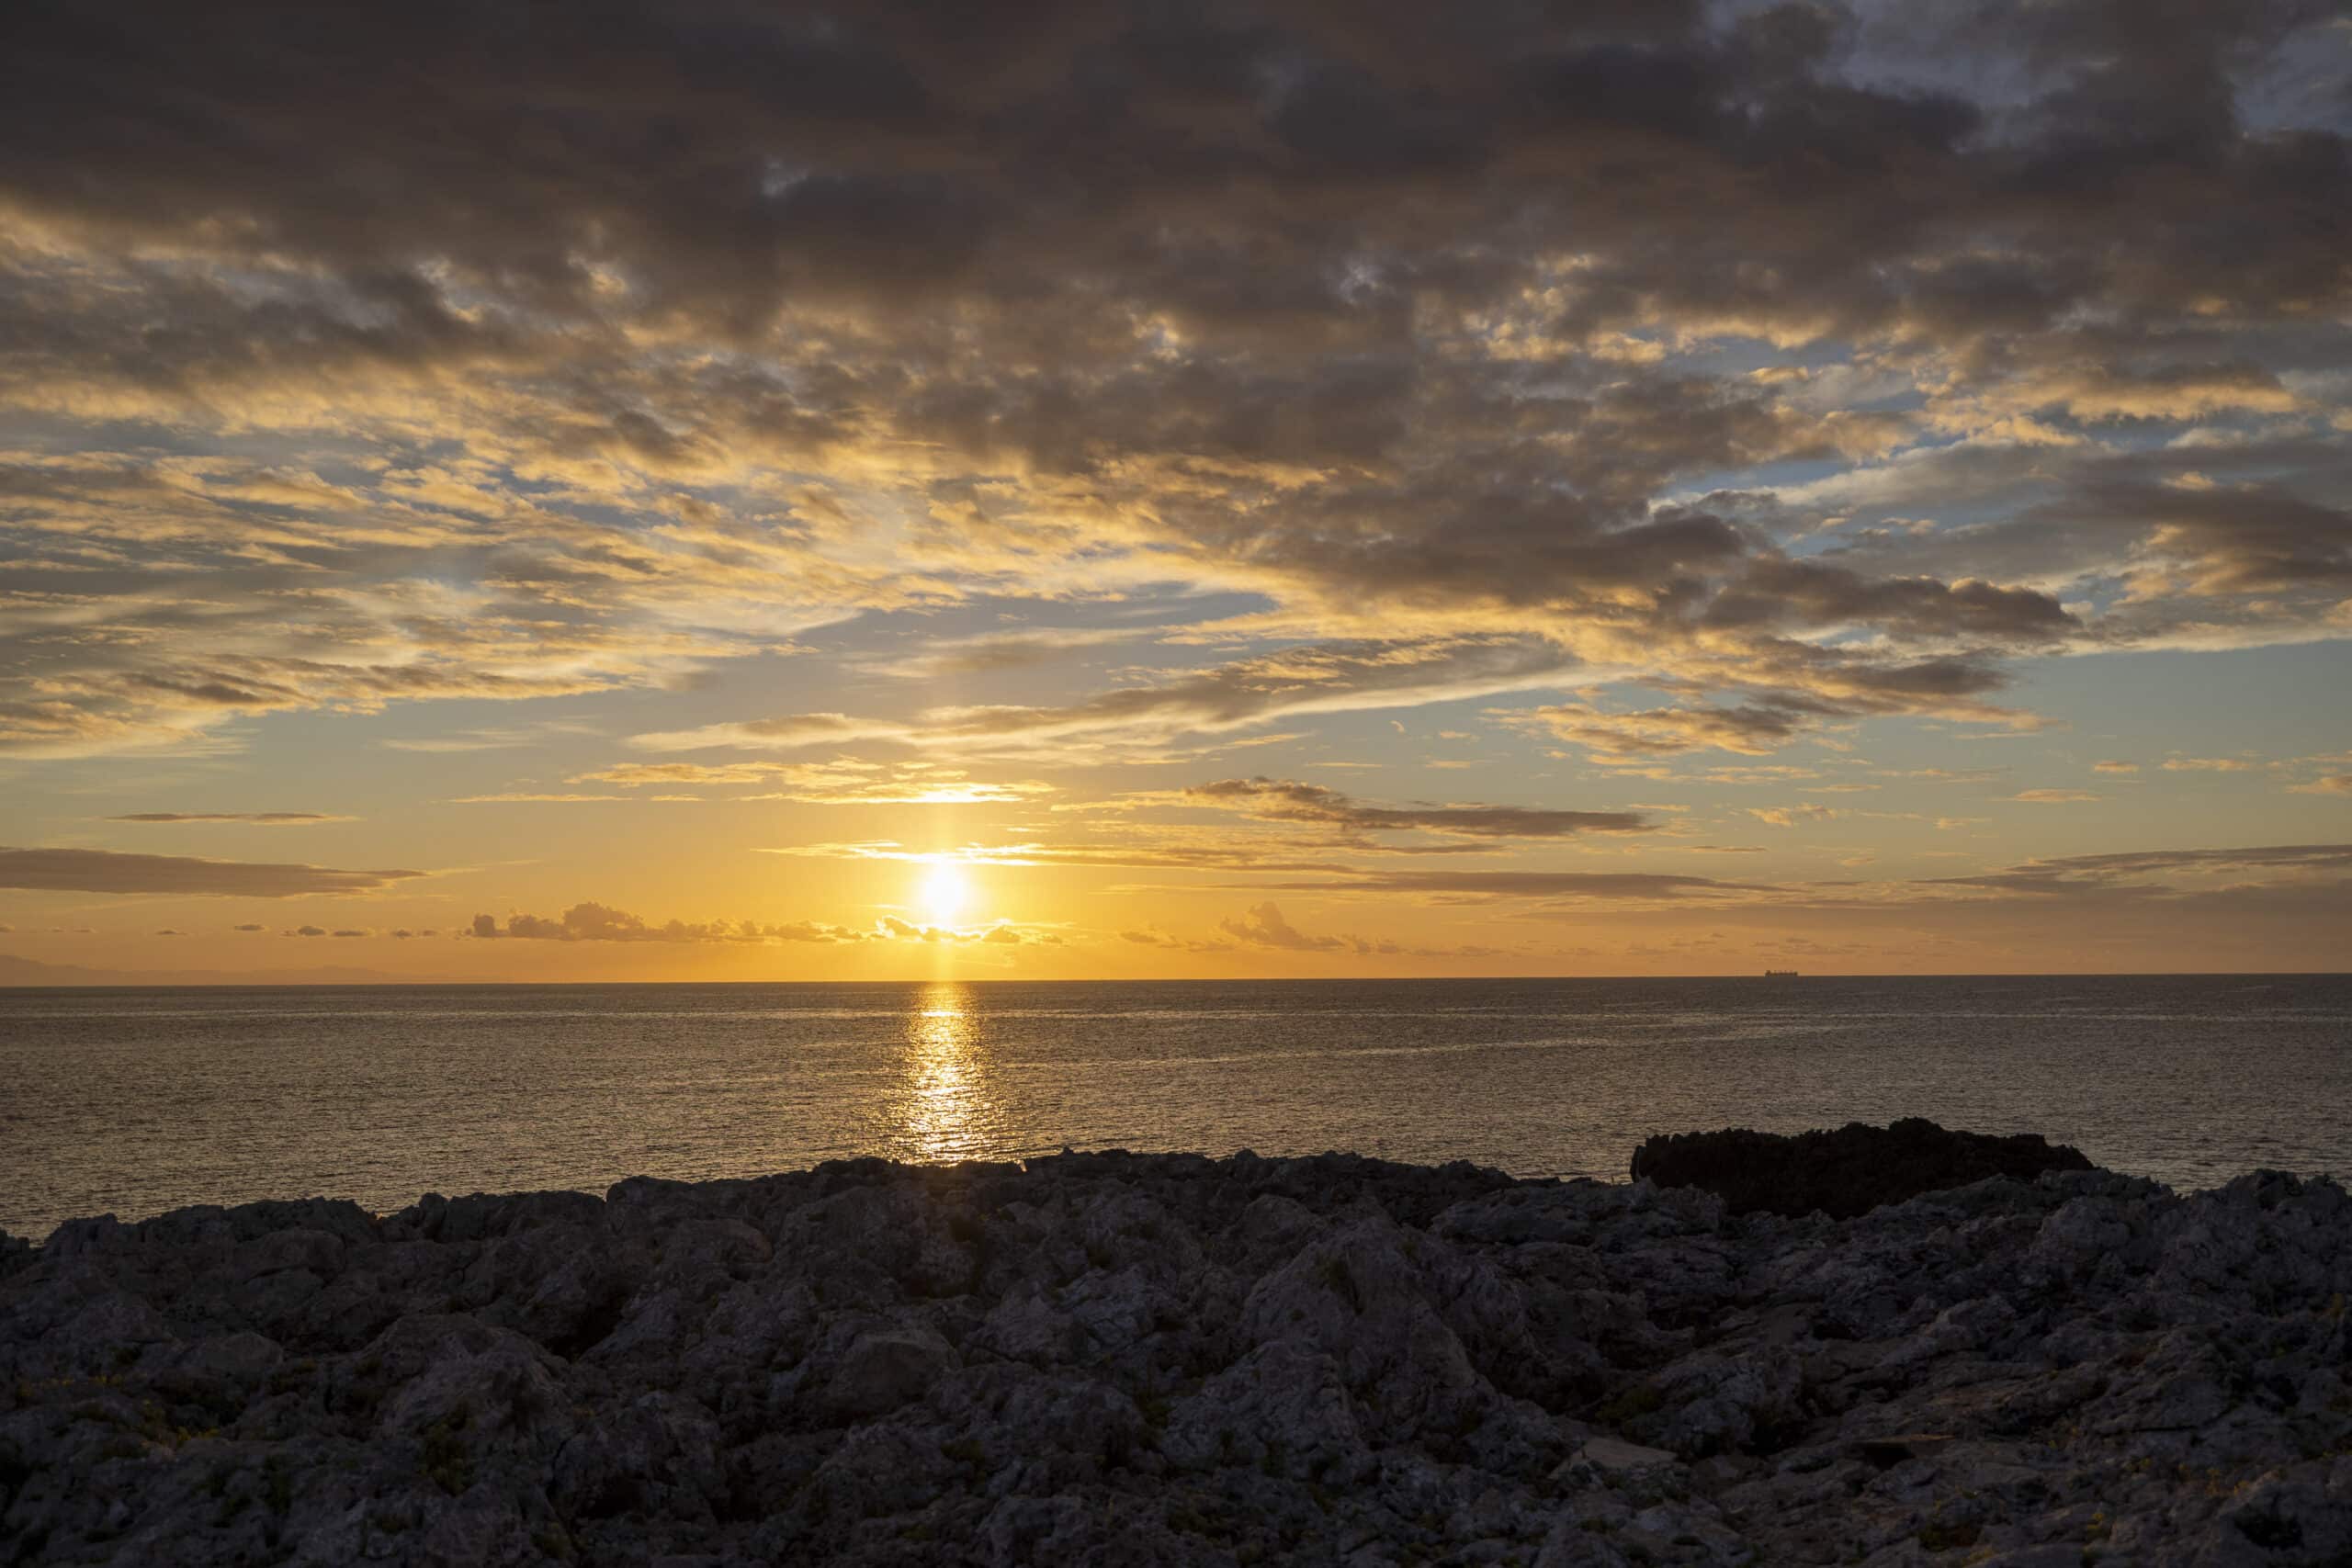 Sonnenuntergang über dem Meer, von einer felsigen Küste aus betrachtet, wobei die Sonne teilweise von Wolken verdeckt wird und ein goldenes Licht auf das Wasser wirft. © Fotografie Tomas Rodriguez